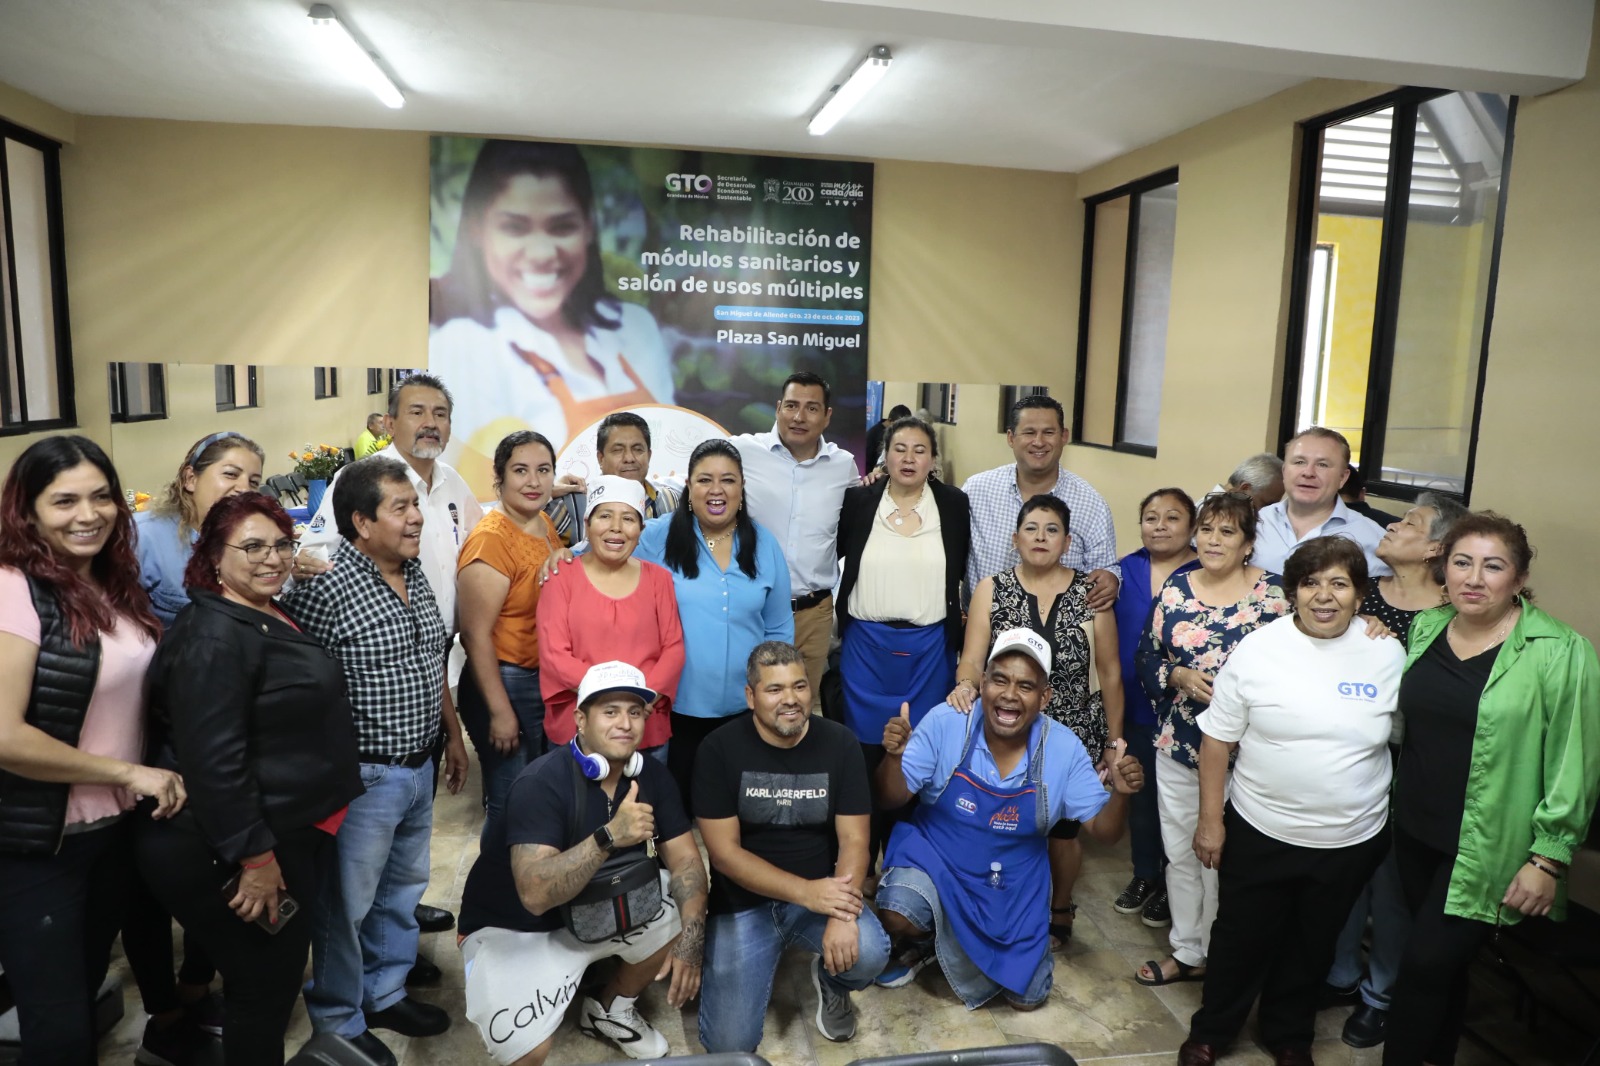 Las escrituras dan un patrimonio y seguridad a los habitantes de San Miguel de Allende: Diego Sinhue Rodríguez 